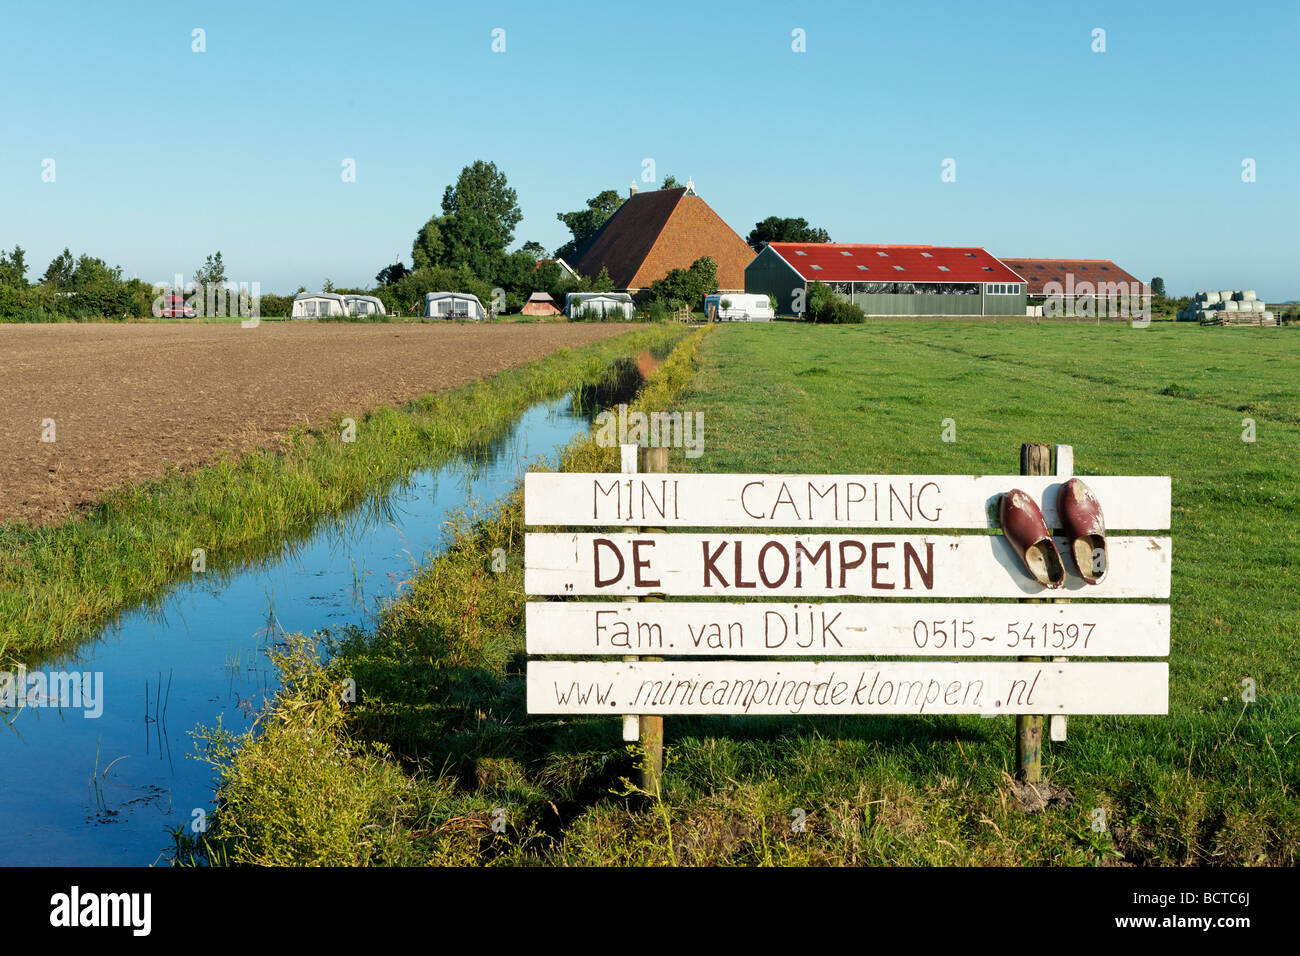 Chemicaliën Onderwijs Buitenlander De Klompen Mini Camping Site near Workum, Friesland, Netherlands Stock  Photo - Alamy